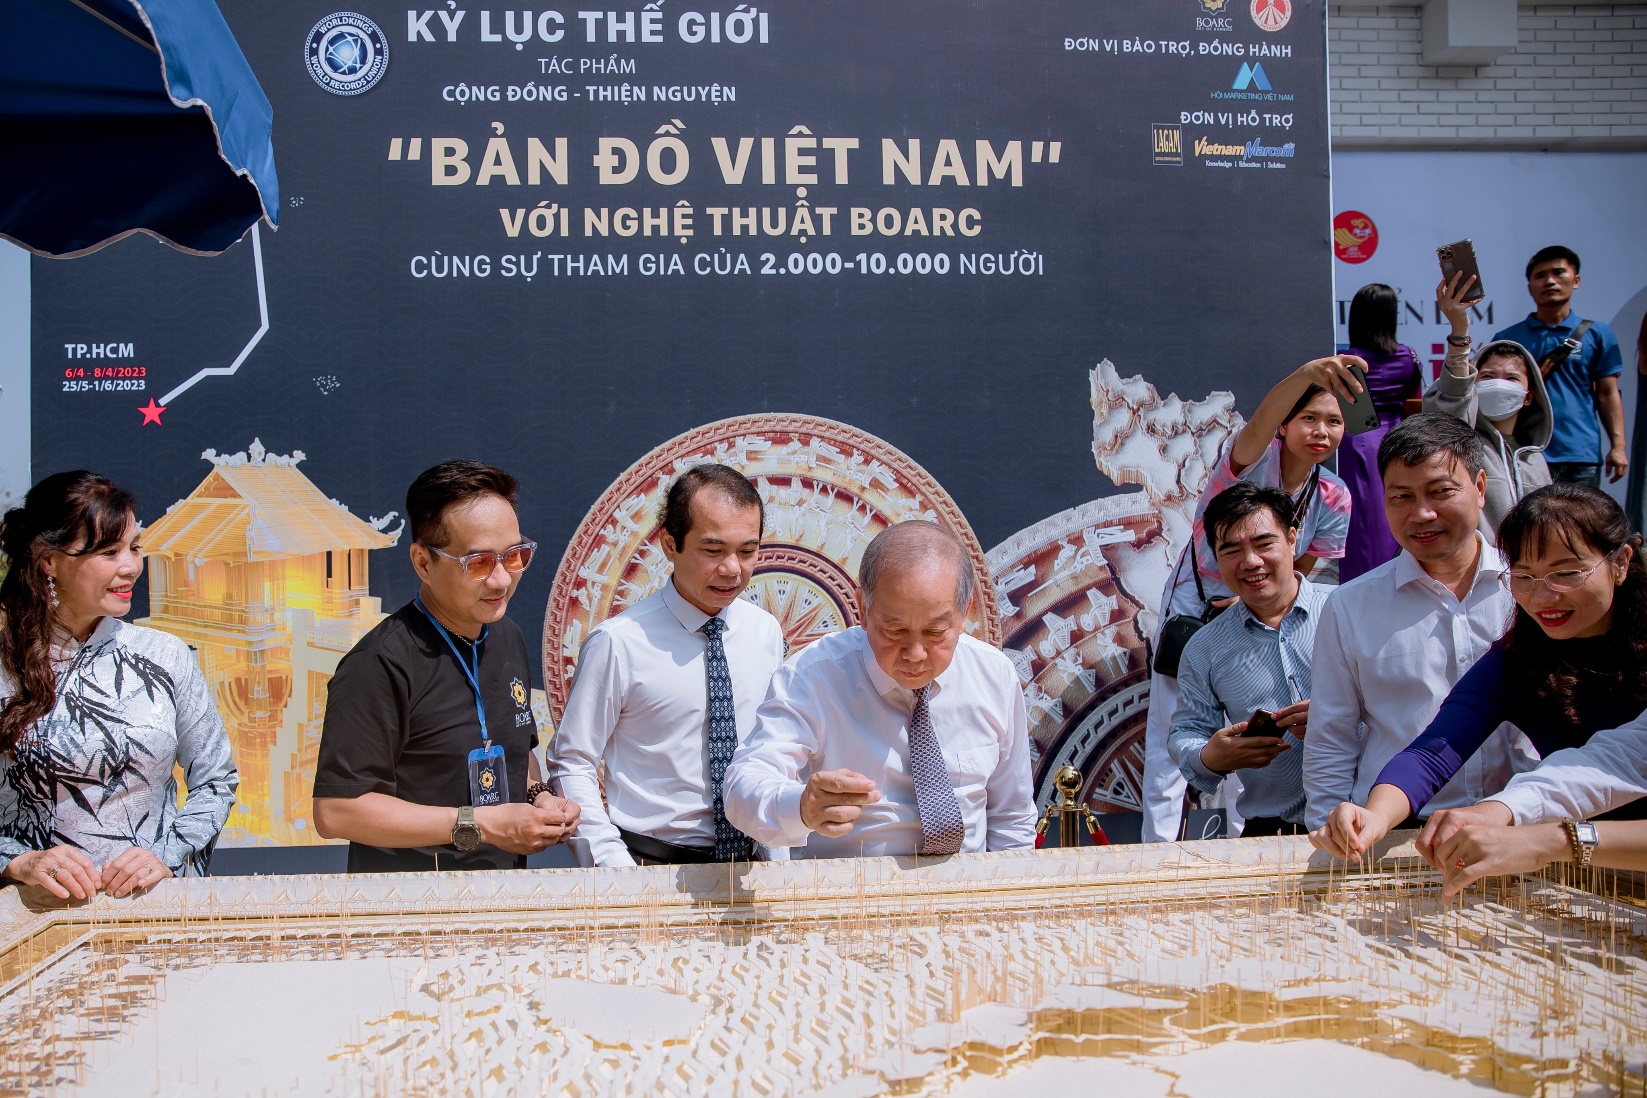 Thiết lập kỷ lục thế giới với tác phẩm 'Bản đồ Việt Nam' bằng tăm Giang - 2